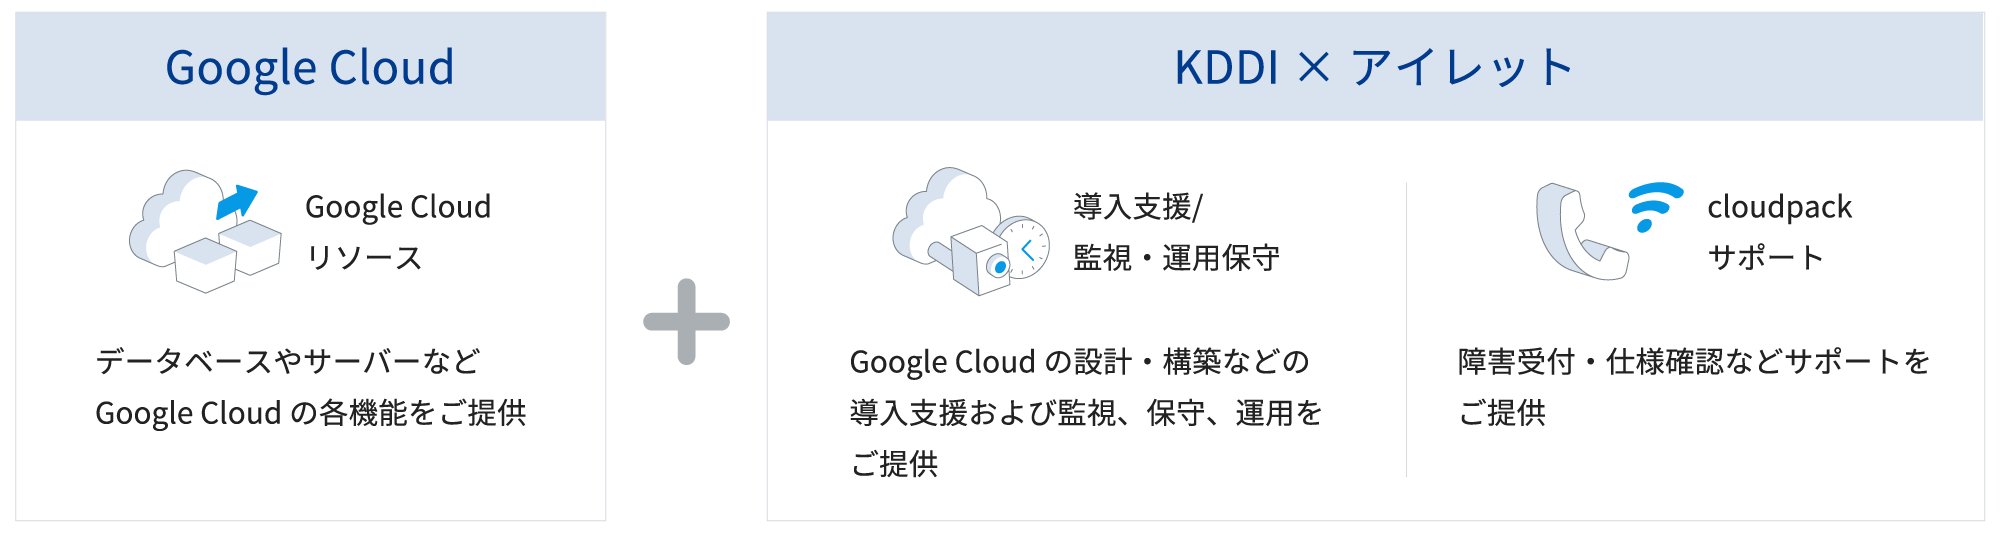 Google Cloudリソース：Google Cloudの各種機能をご利用いただけます。　KDDIサポート：障害受付・仕様確認などサポートをご提供します。　KDDI×パートナー：Google Cloudの設計・構築などの導入支援および監視、保守、運用を個別見積にてご提供します。